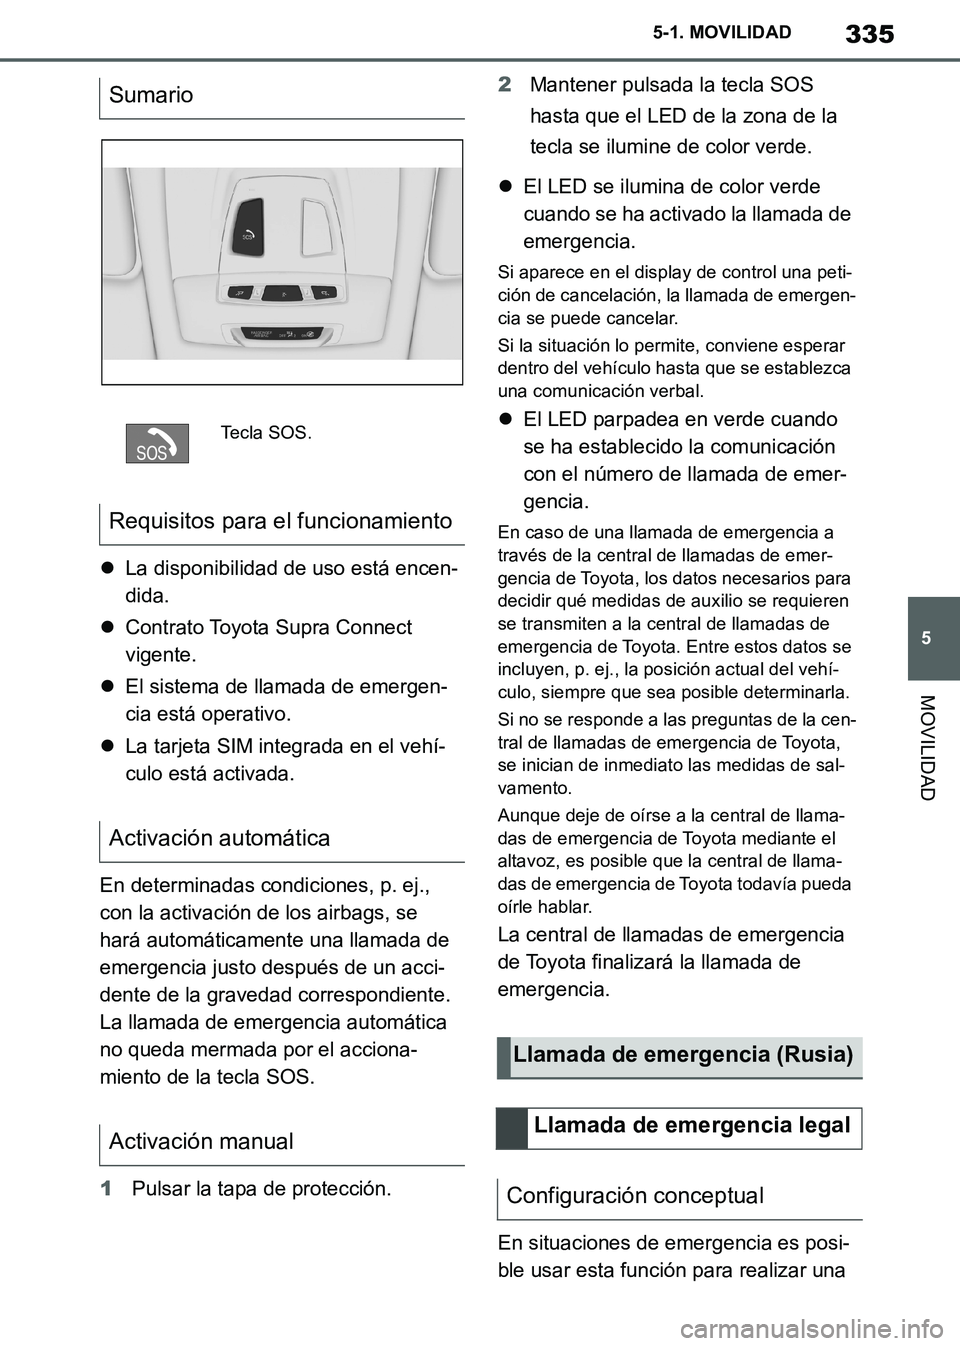 TOYOTA SUPRA 2019  Manuale de Empleo (in Spanish) 335
5
Supra Owners Manual_ES
5-1. MOVILIDAD
MOVILIDAD
La disponibilidad de uso está encen-
dida.
Contrato Toyota Supra Connect 
vigente.
El sistema de llamada de emergen-
cia está operativ